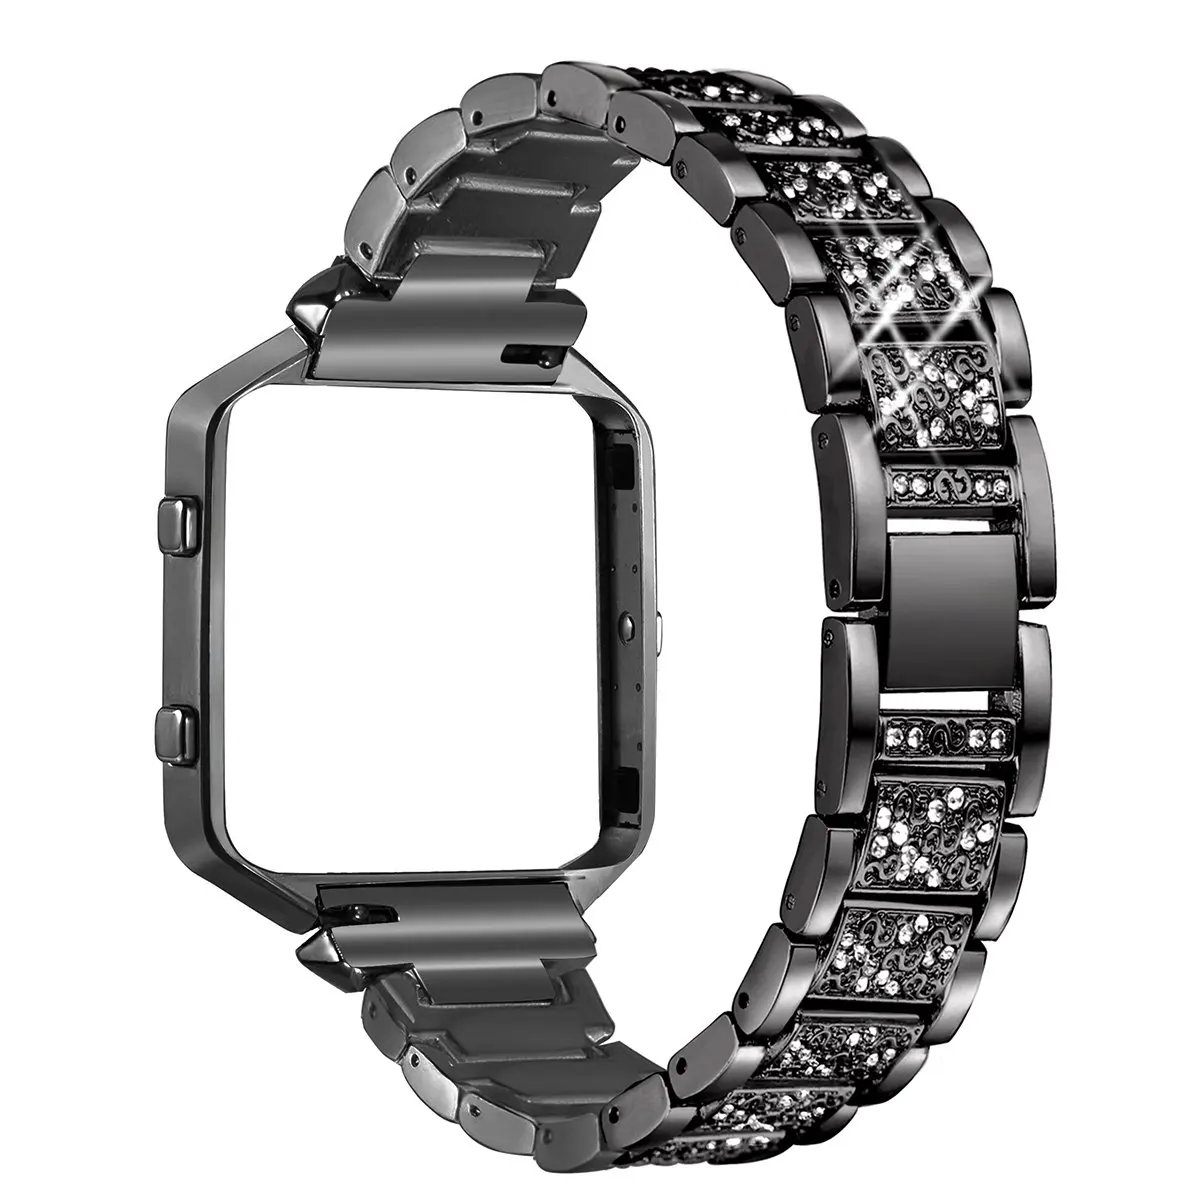 Oulucci нержавеющая сталь для Fitbit Blaze полосы с рамкой часы сменные ремешки ремешок аксессуар ремешок для Fitbit Blaze ремень